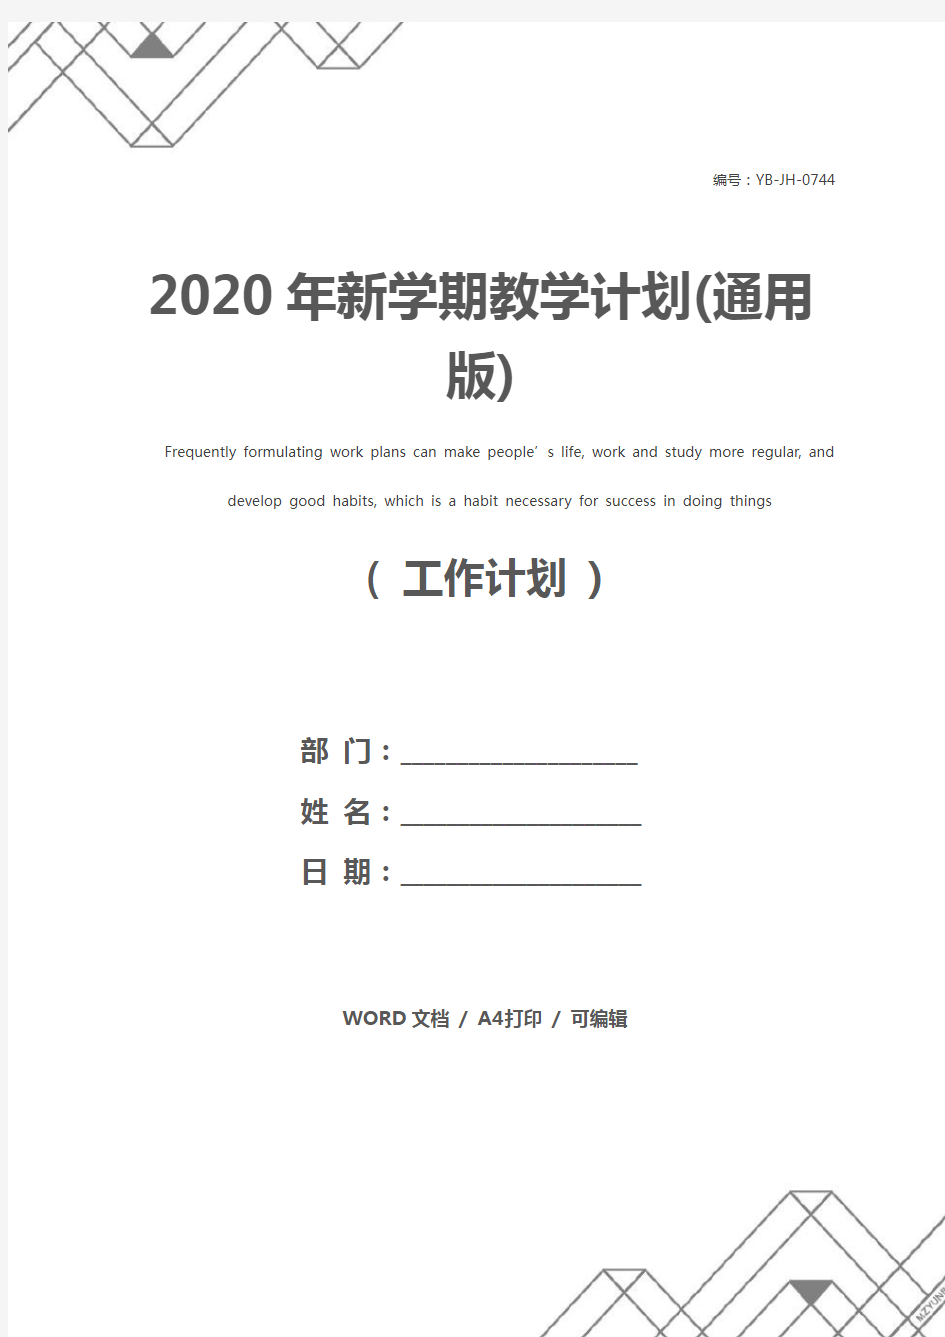 2020年新学期教学计划(通用版)